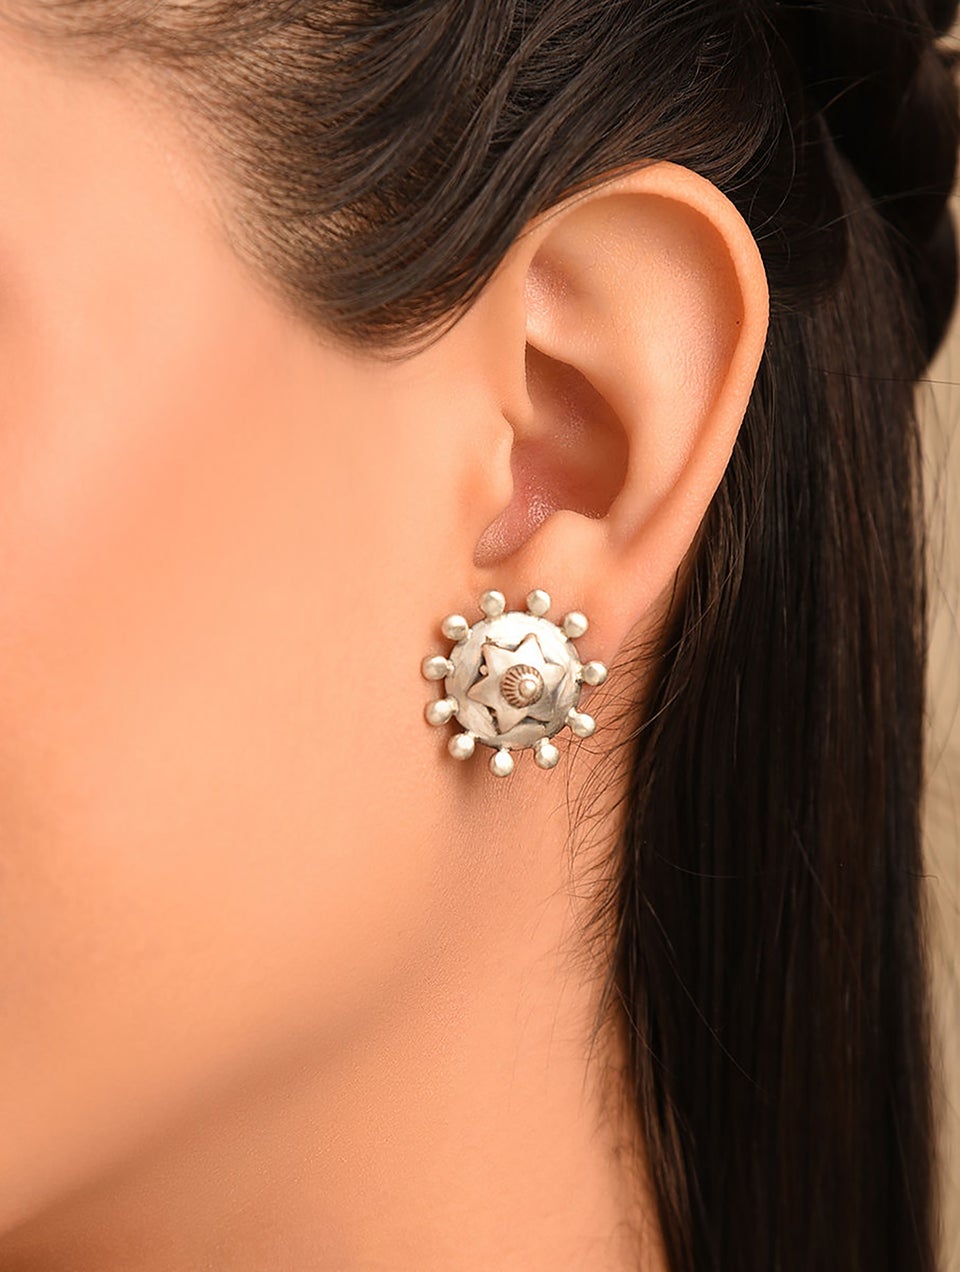 Women Tribal Silver Earrings